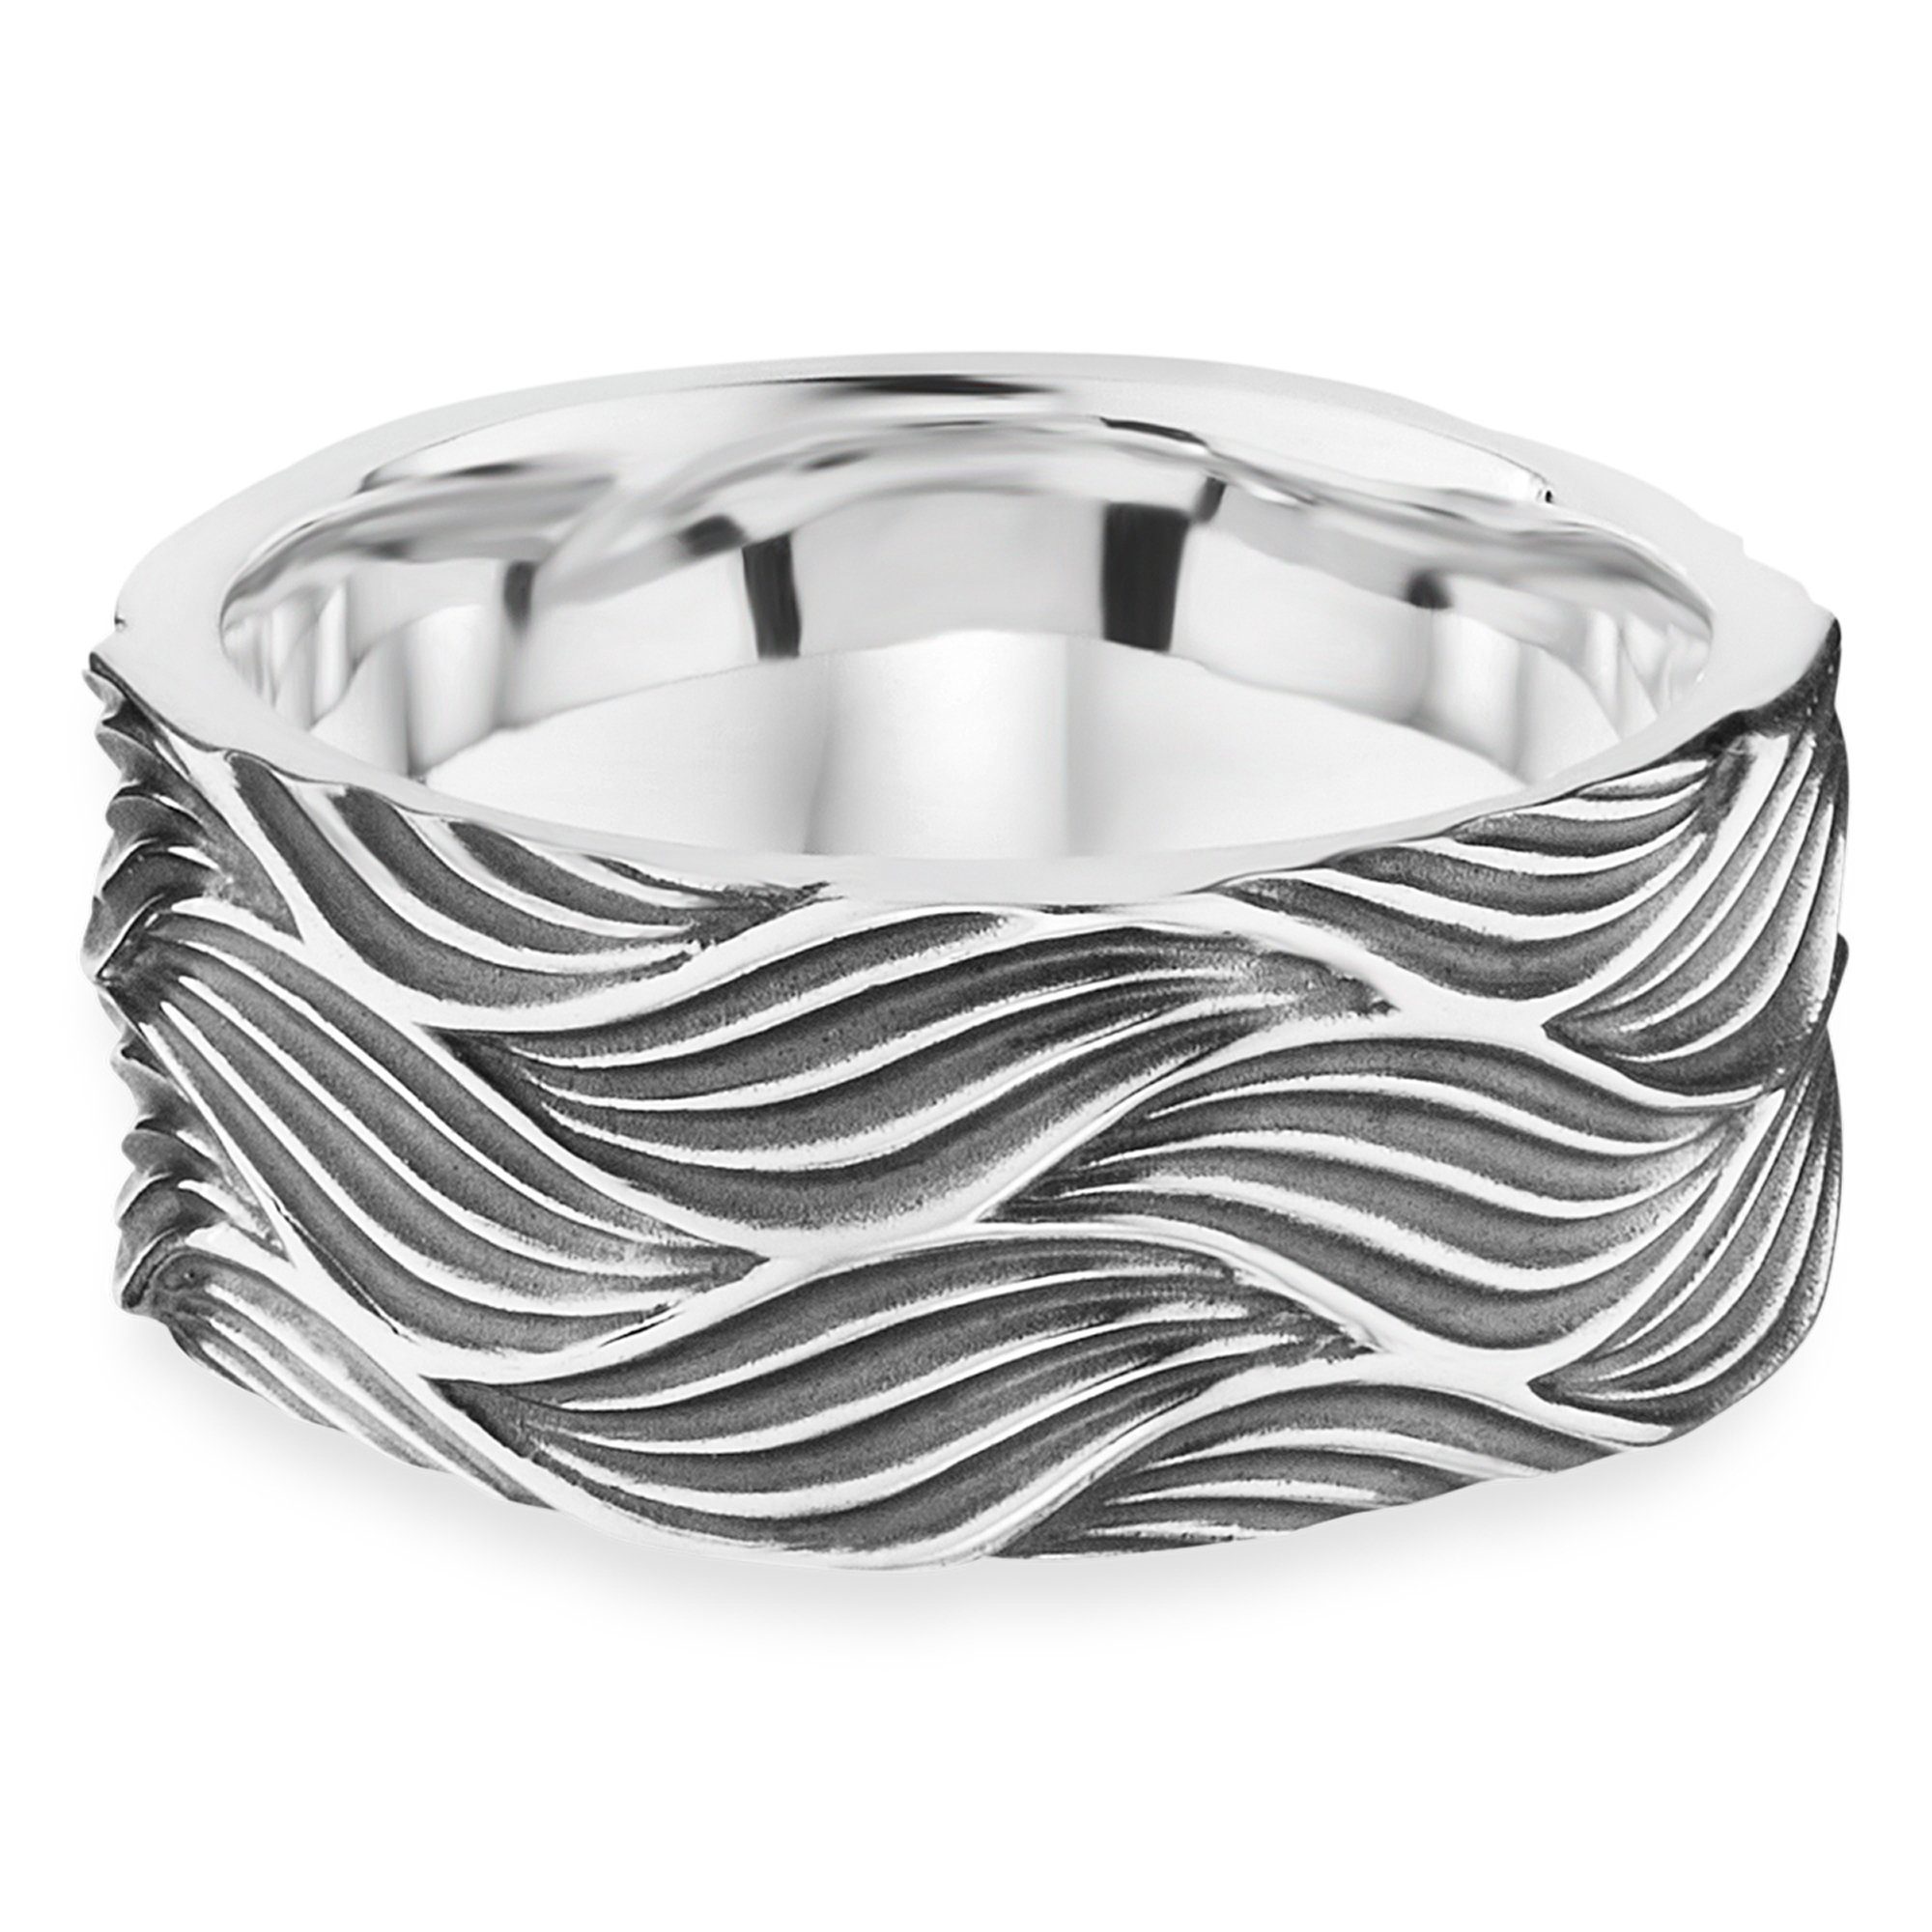 Wellen oxidiert CAÏ Fingerring Sterling 925/- Silber